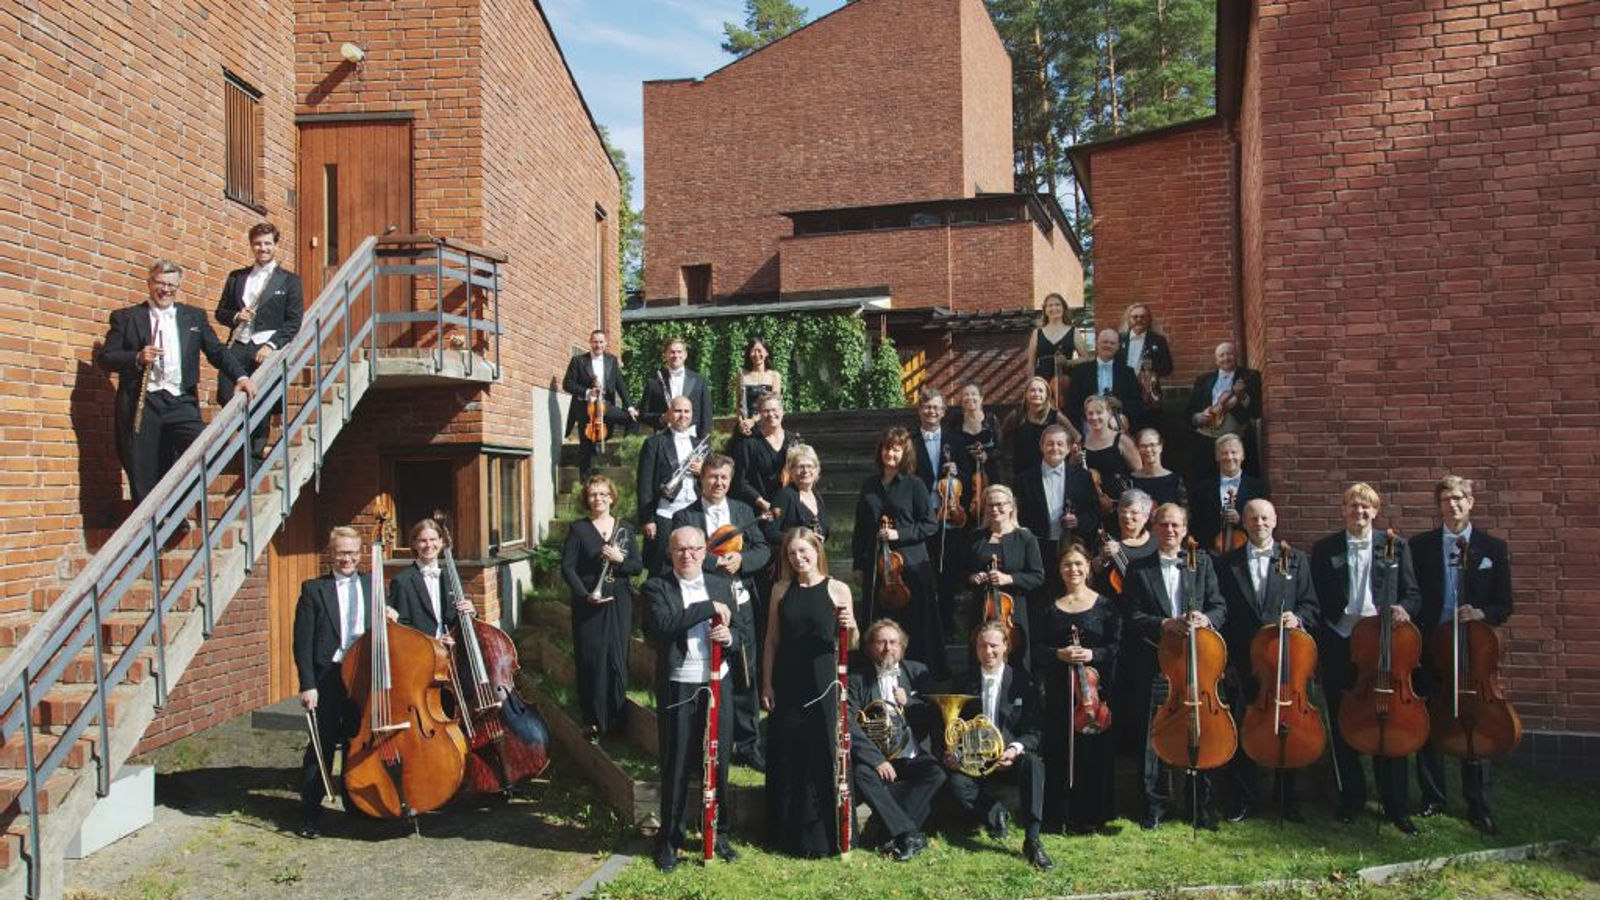 Kuvanssa on Jyväskylän Sinfonian soittajat yhteiskuvassa ulkona punaisten tiilirakenusten edessä riveittäin alhaalta ylöspäin.  Kaksi puhallinsoittajaa on vasemmalla olevilla portailla.    Edessä oikealla ovat sellistit ja vasemmalla basson soittajat.  Taustalta näkyy koivuja ja sinistä taivasta.